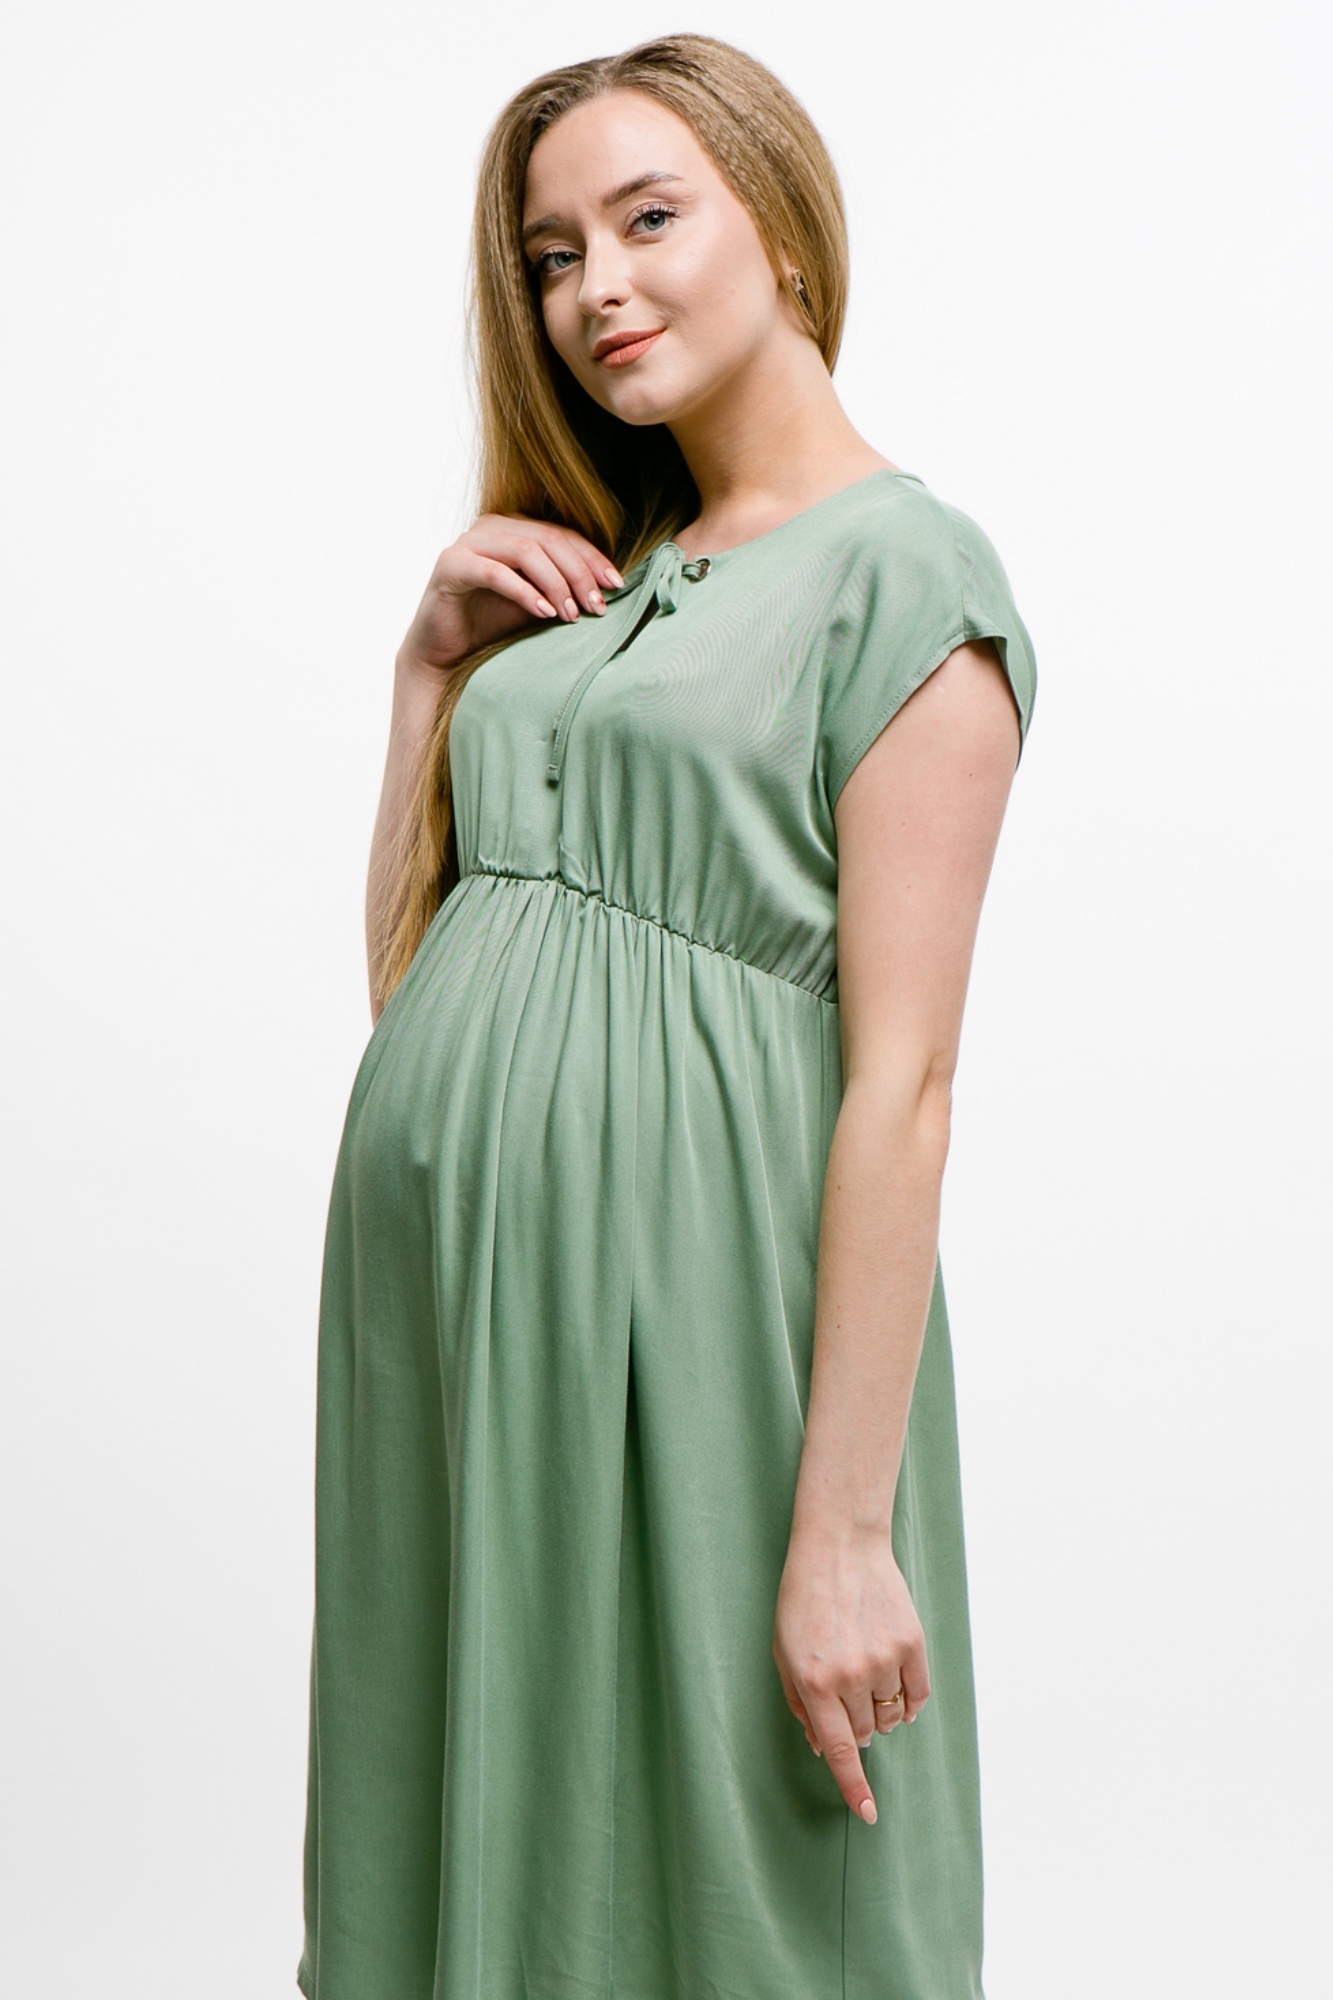 Выбираем платья для беременных. Особенности фасонов платьев для будущих мам.